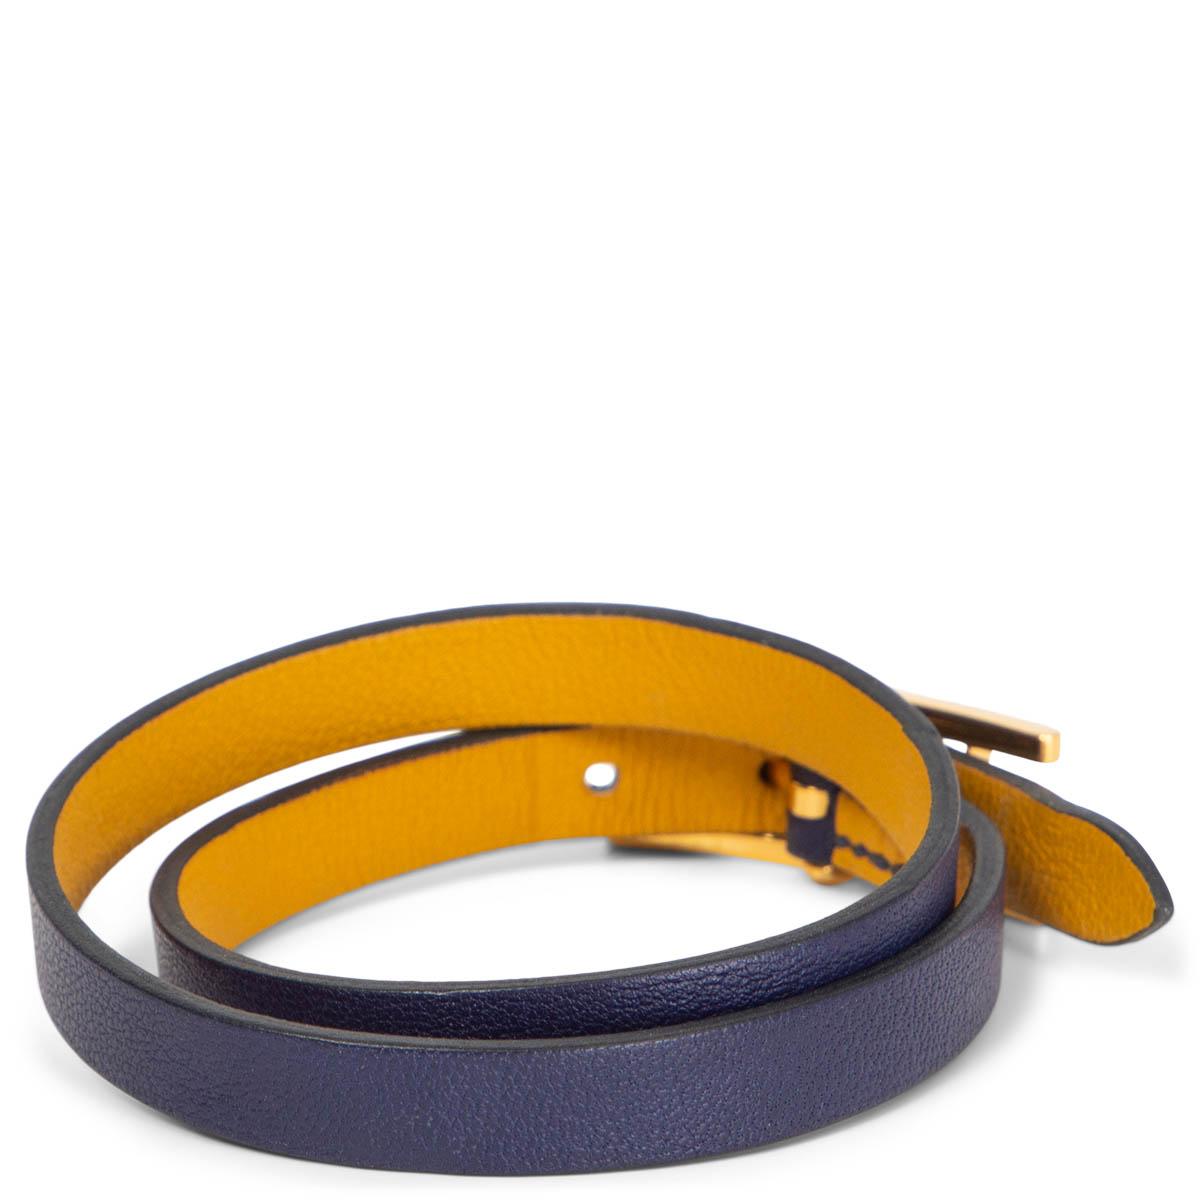 Bracelet double tour 100% authentique Hermès Behapi en cuir Swift bleu Encre et jaune Ambre. Le bracelet est une longue bande de cuir de veau swift bleu foncé qui s'enroule deux fois autour du poignet et se ferme avec une boucle Hermès H plaquée or.